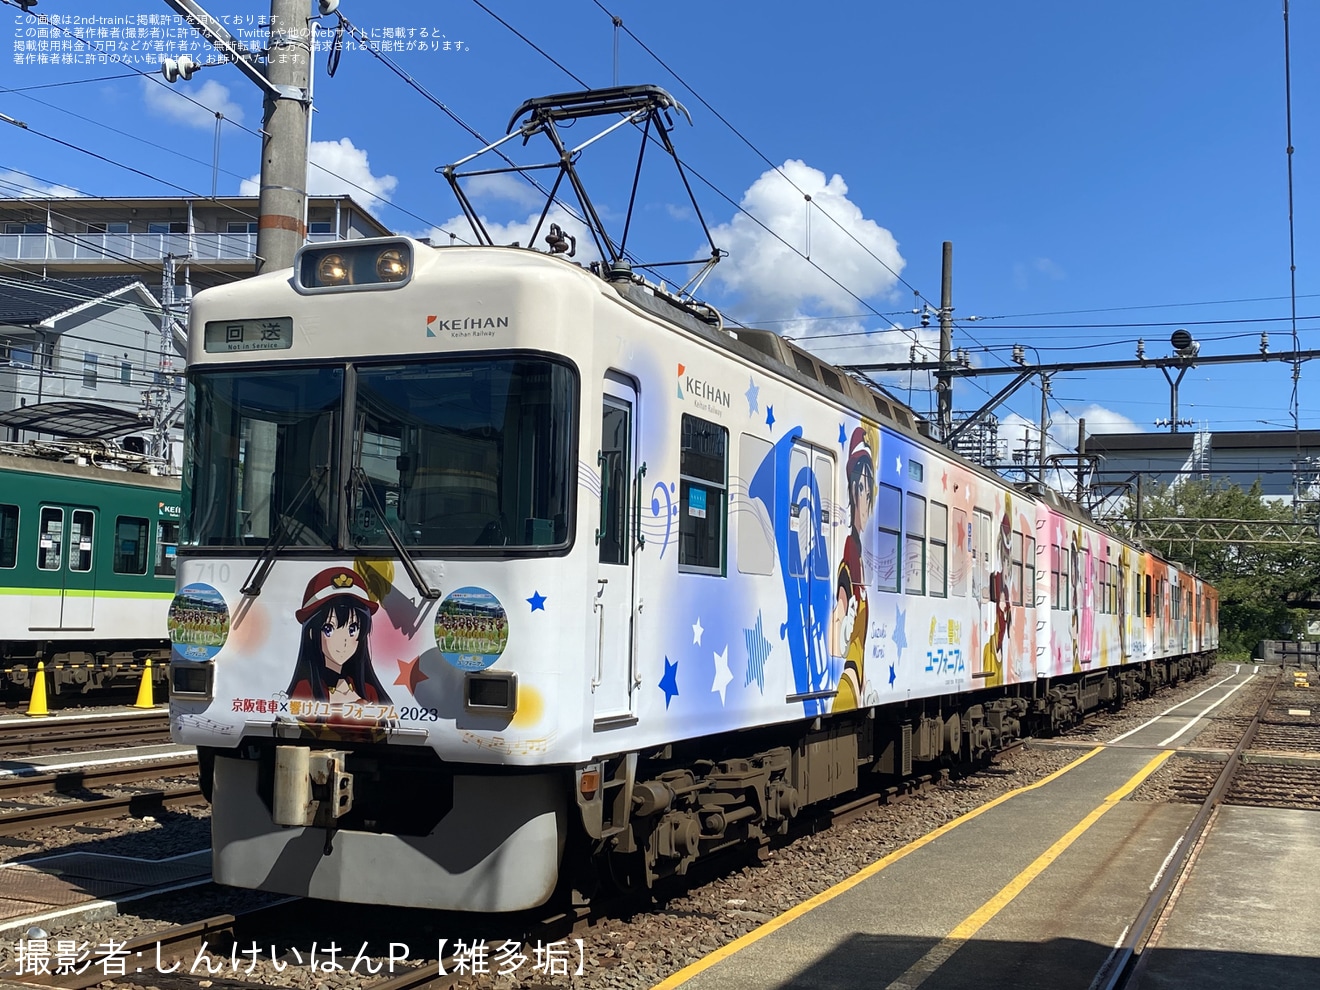 【京阪】「『響け!ユーフォニアム』ラッピング電車撮影会」開催の拡大写真